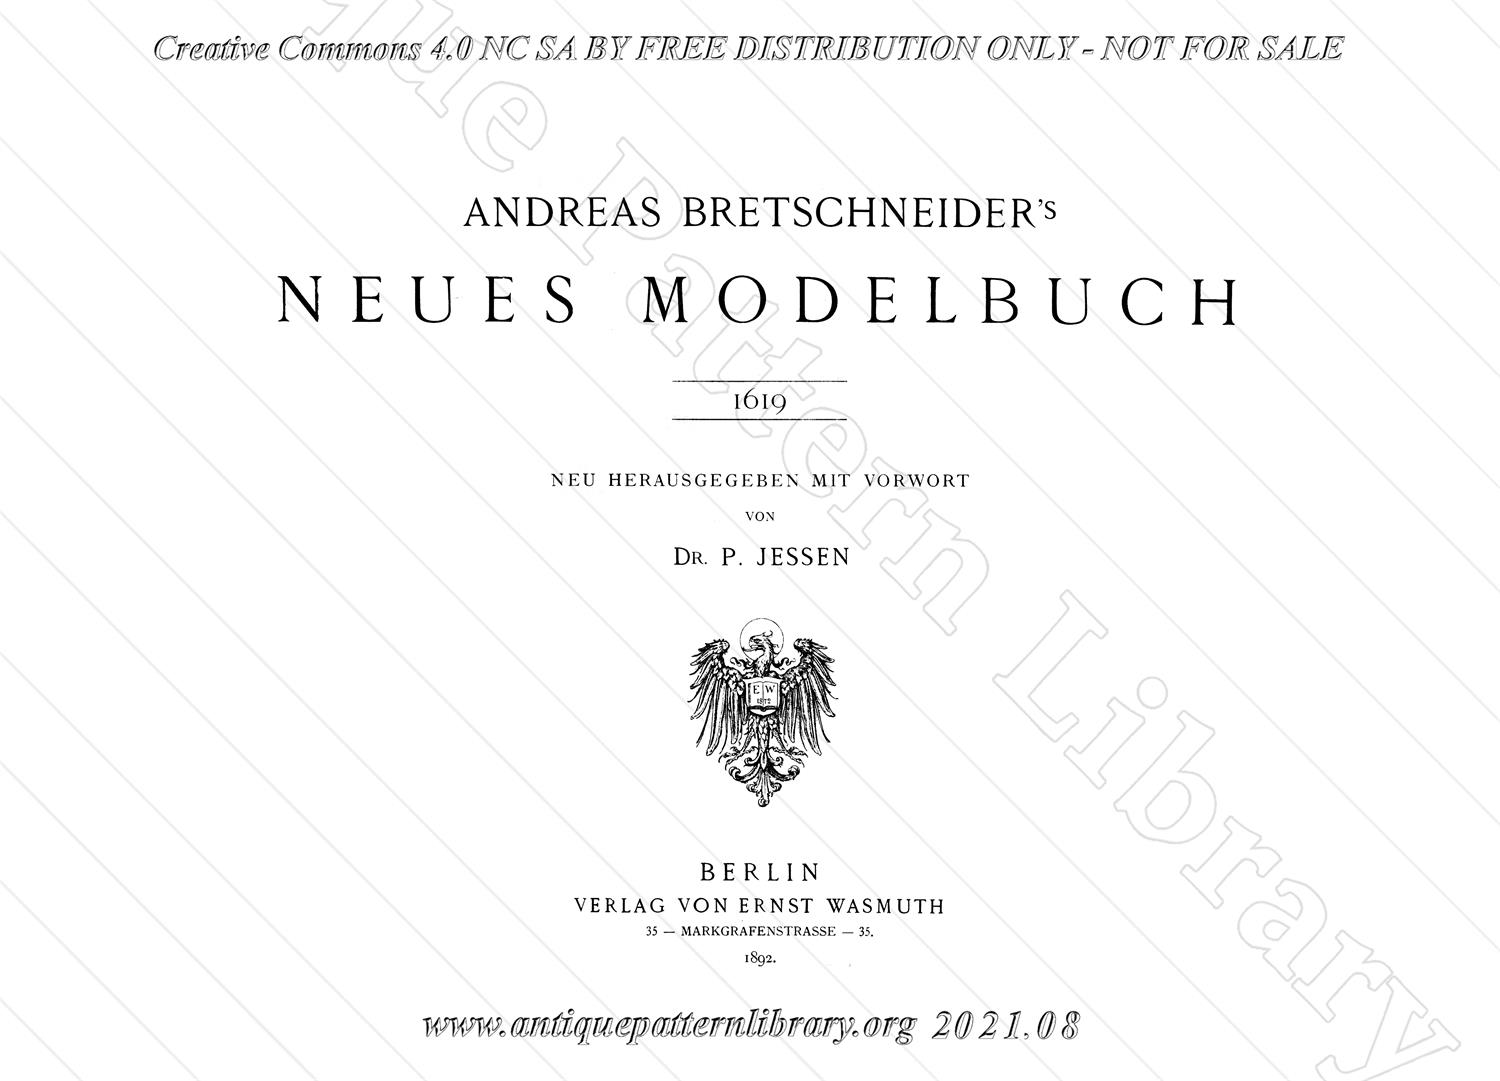 E-WM050 A. Bretschneider's Neues Modelbuch